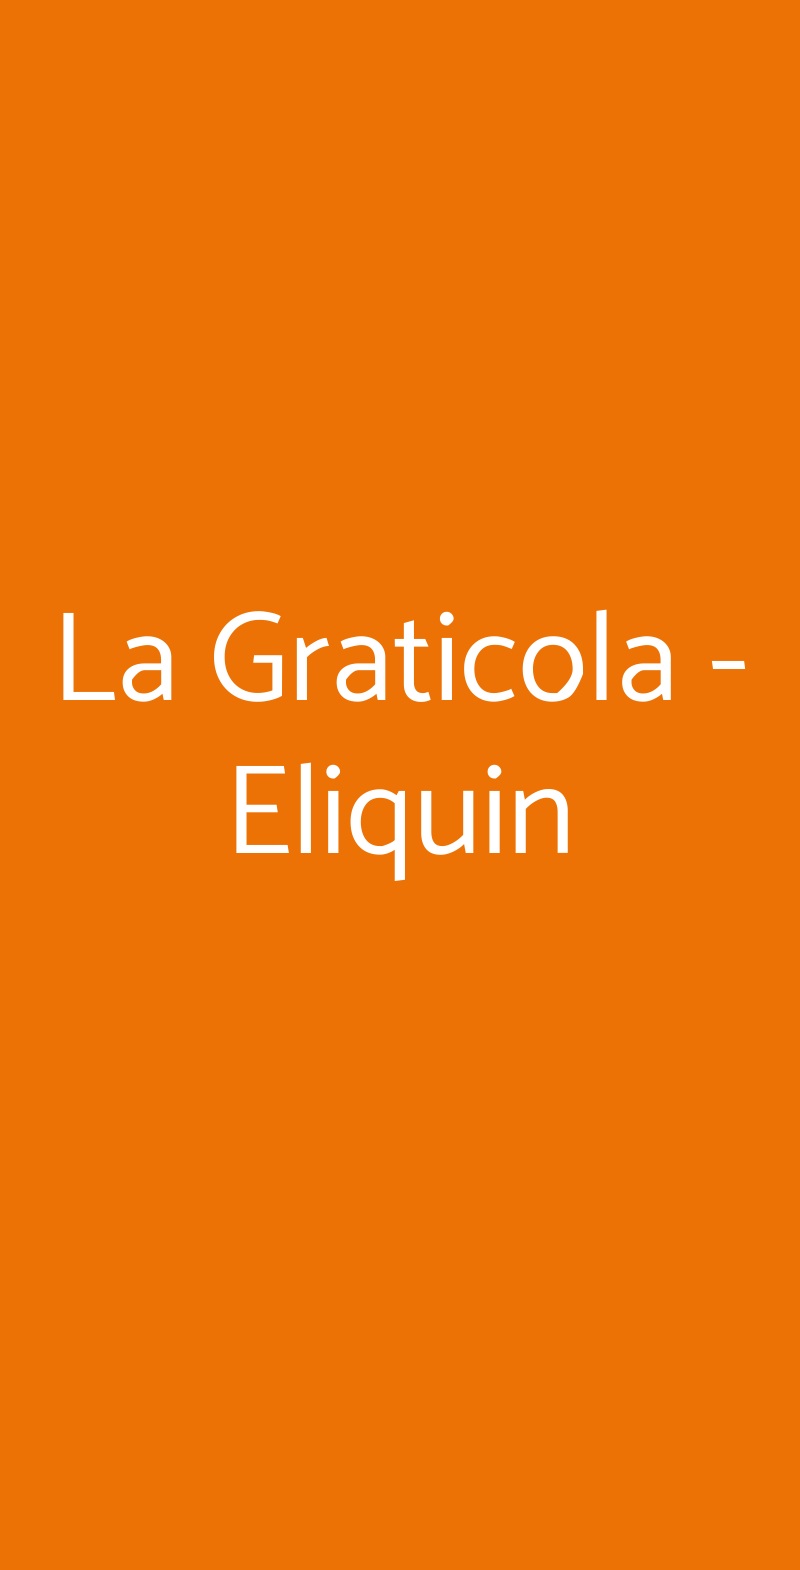 La Graticola - Eliquin Roma menù 1 pagina